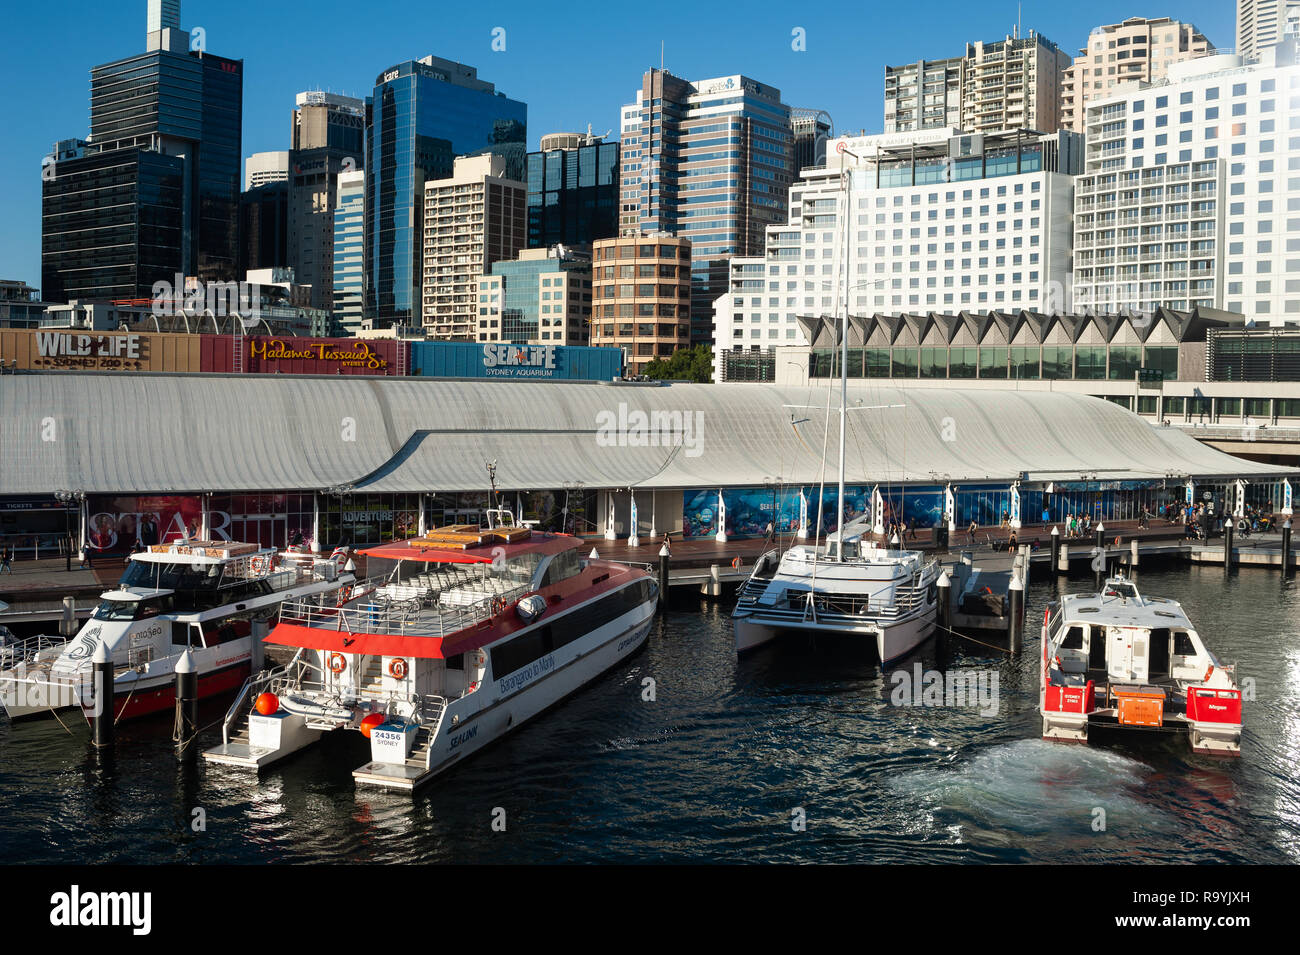 20.09.2018, Sydney, New South Wales, Australien - Ein Blick von der Pyrmont-Bruecke auf Boote an einer Anlegestelle im Darling Harbour und auf die Sky Stock Photo